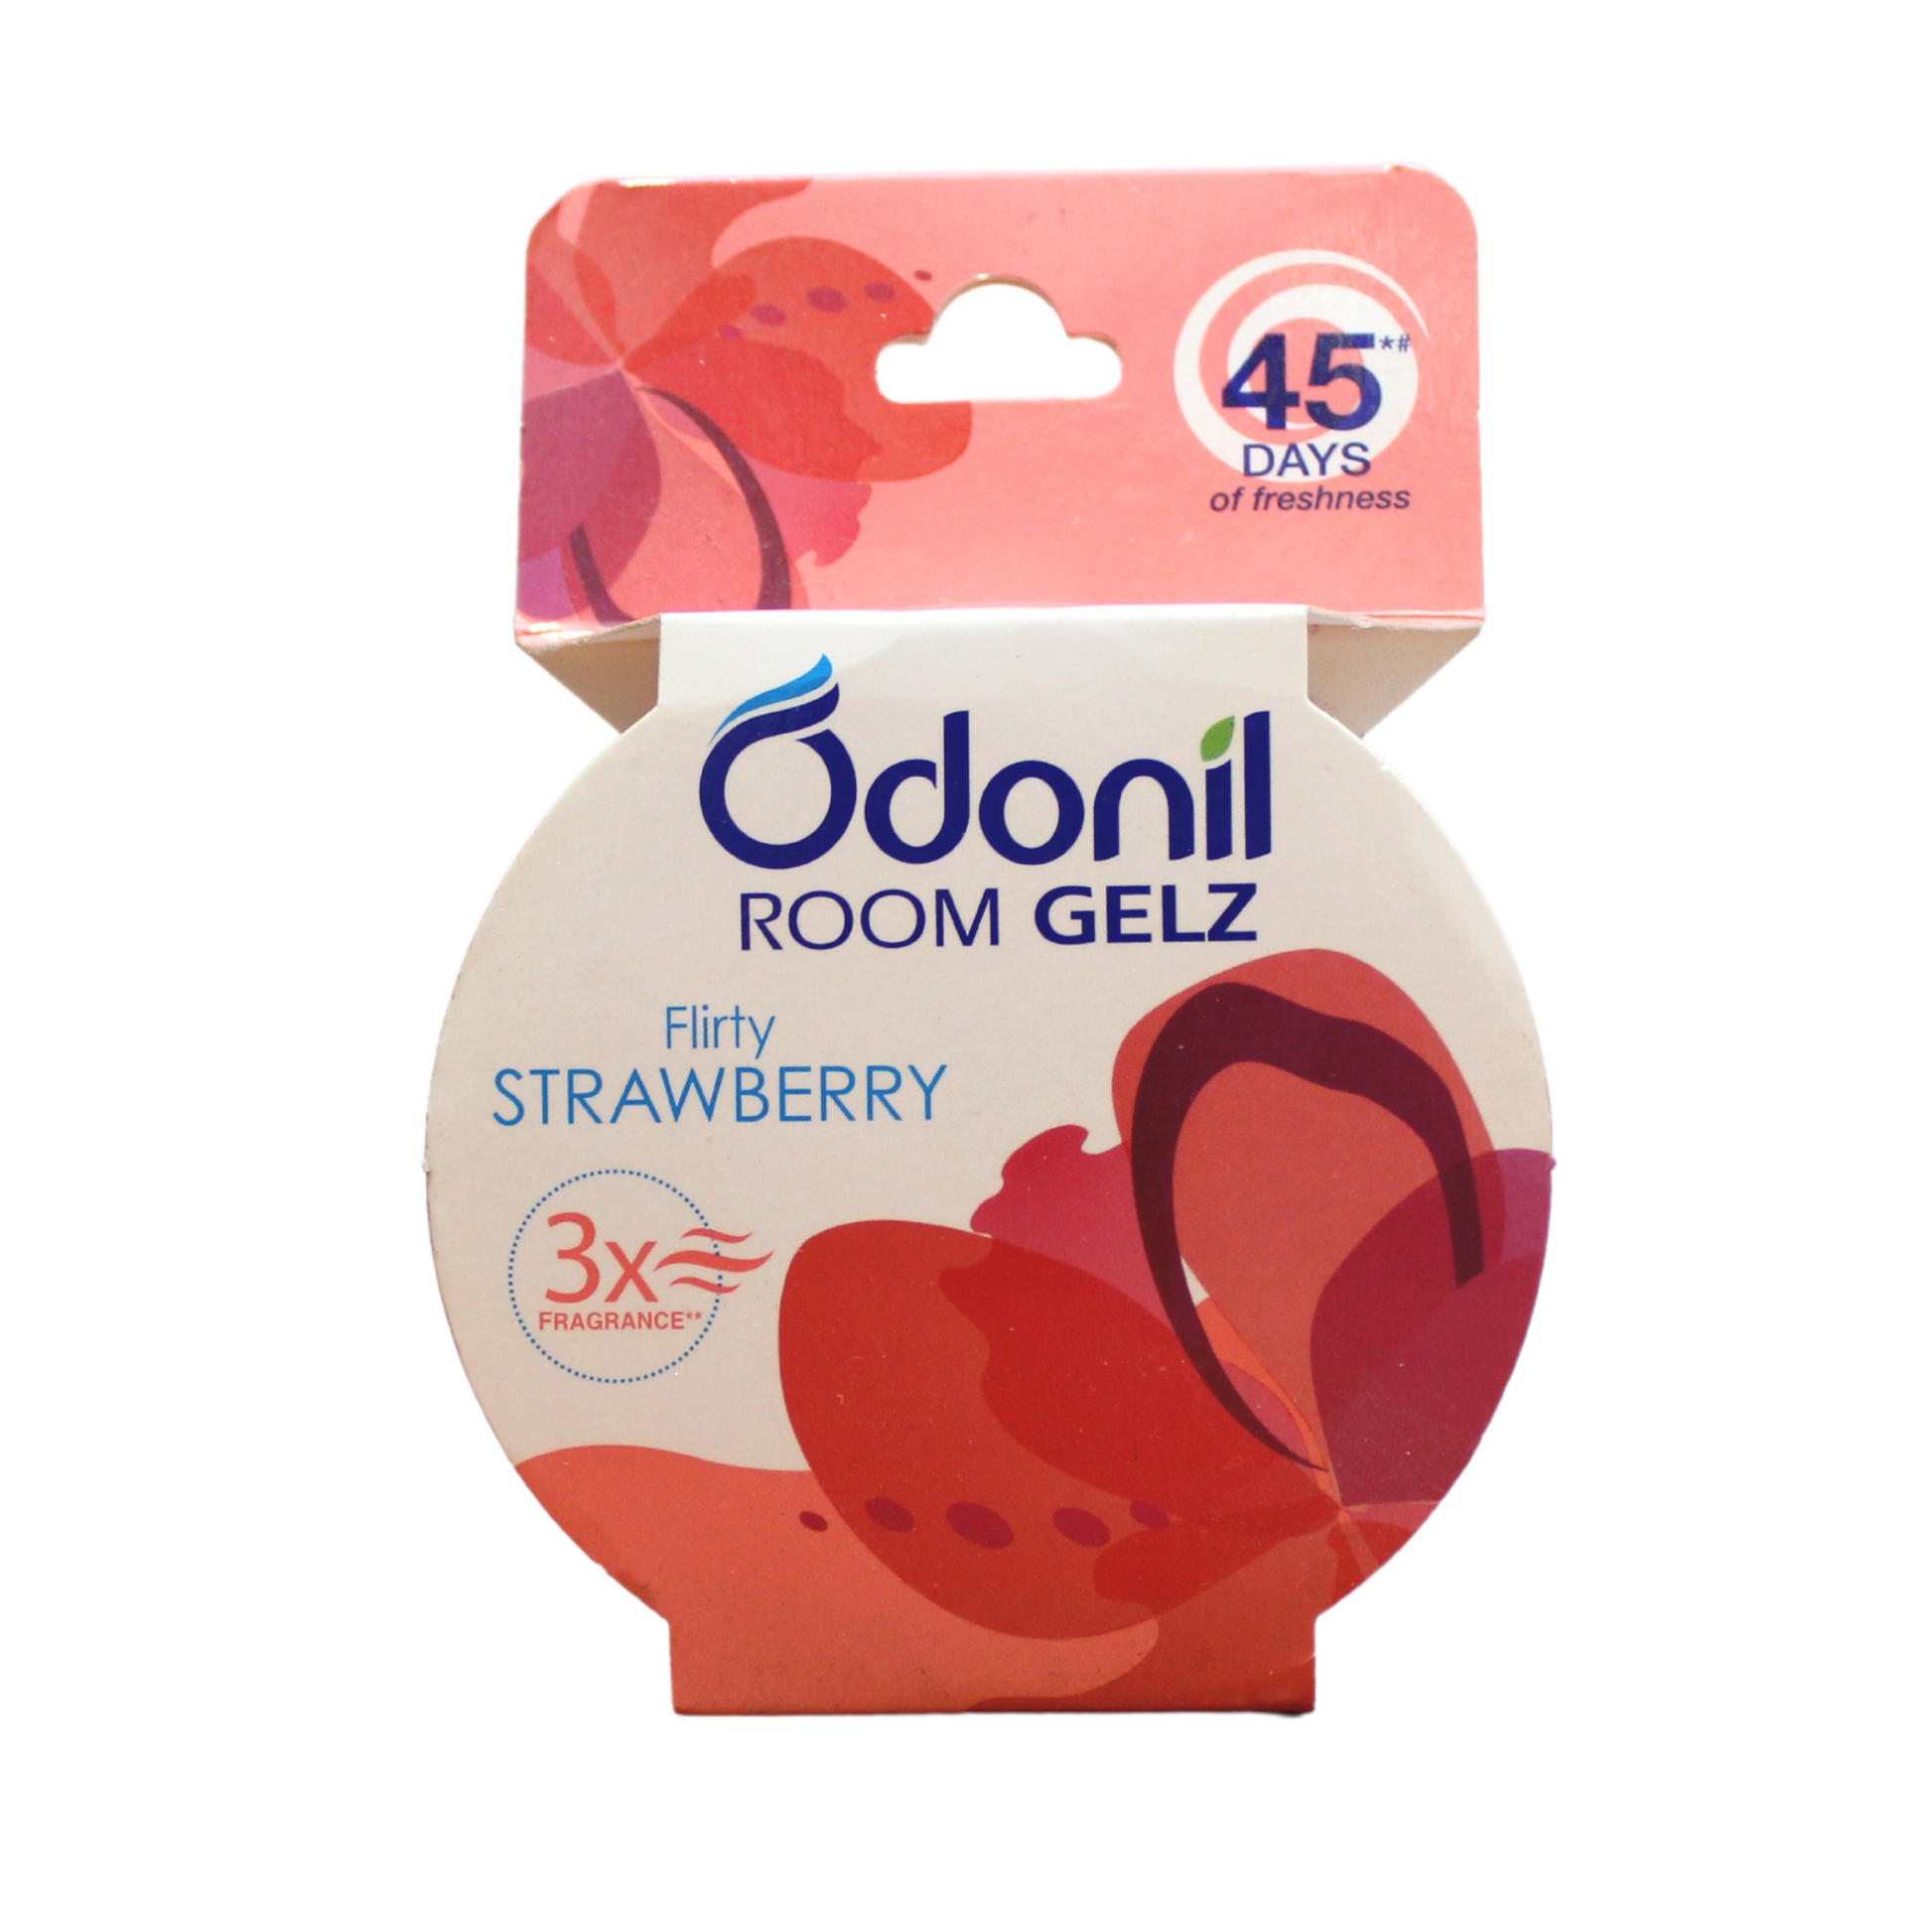 Odonil Room Gelz 75gm - Flirty strawberry -  Dabur - Medizzo.com